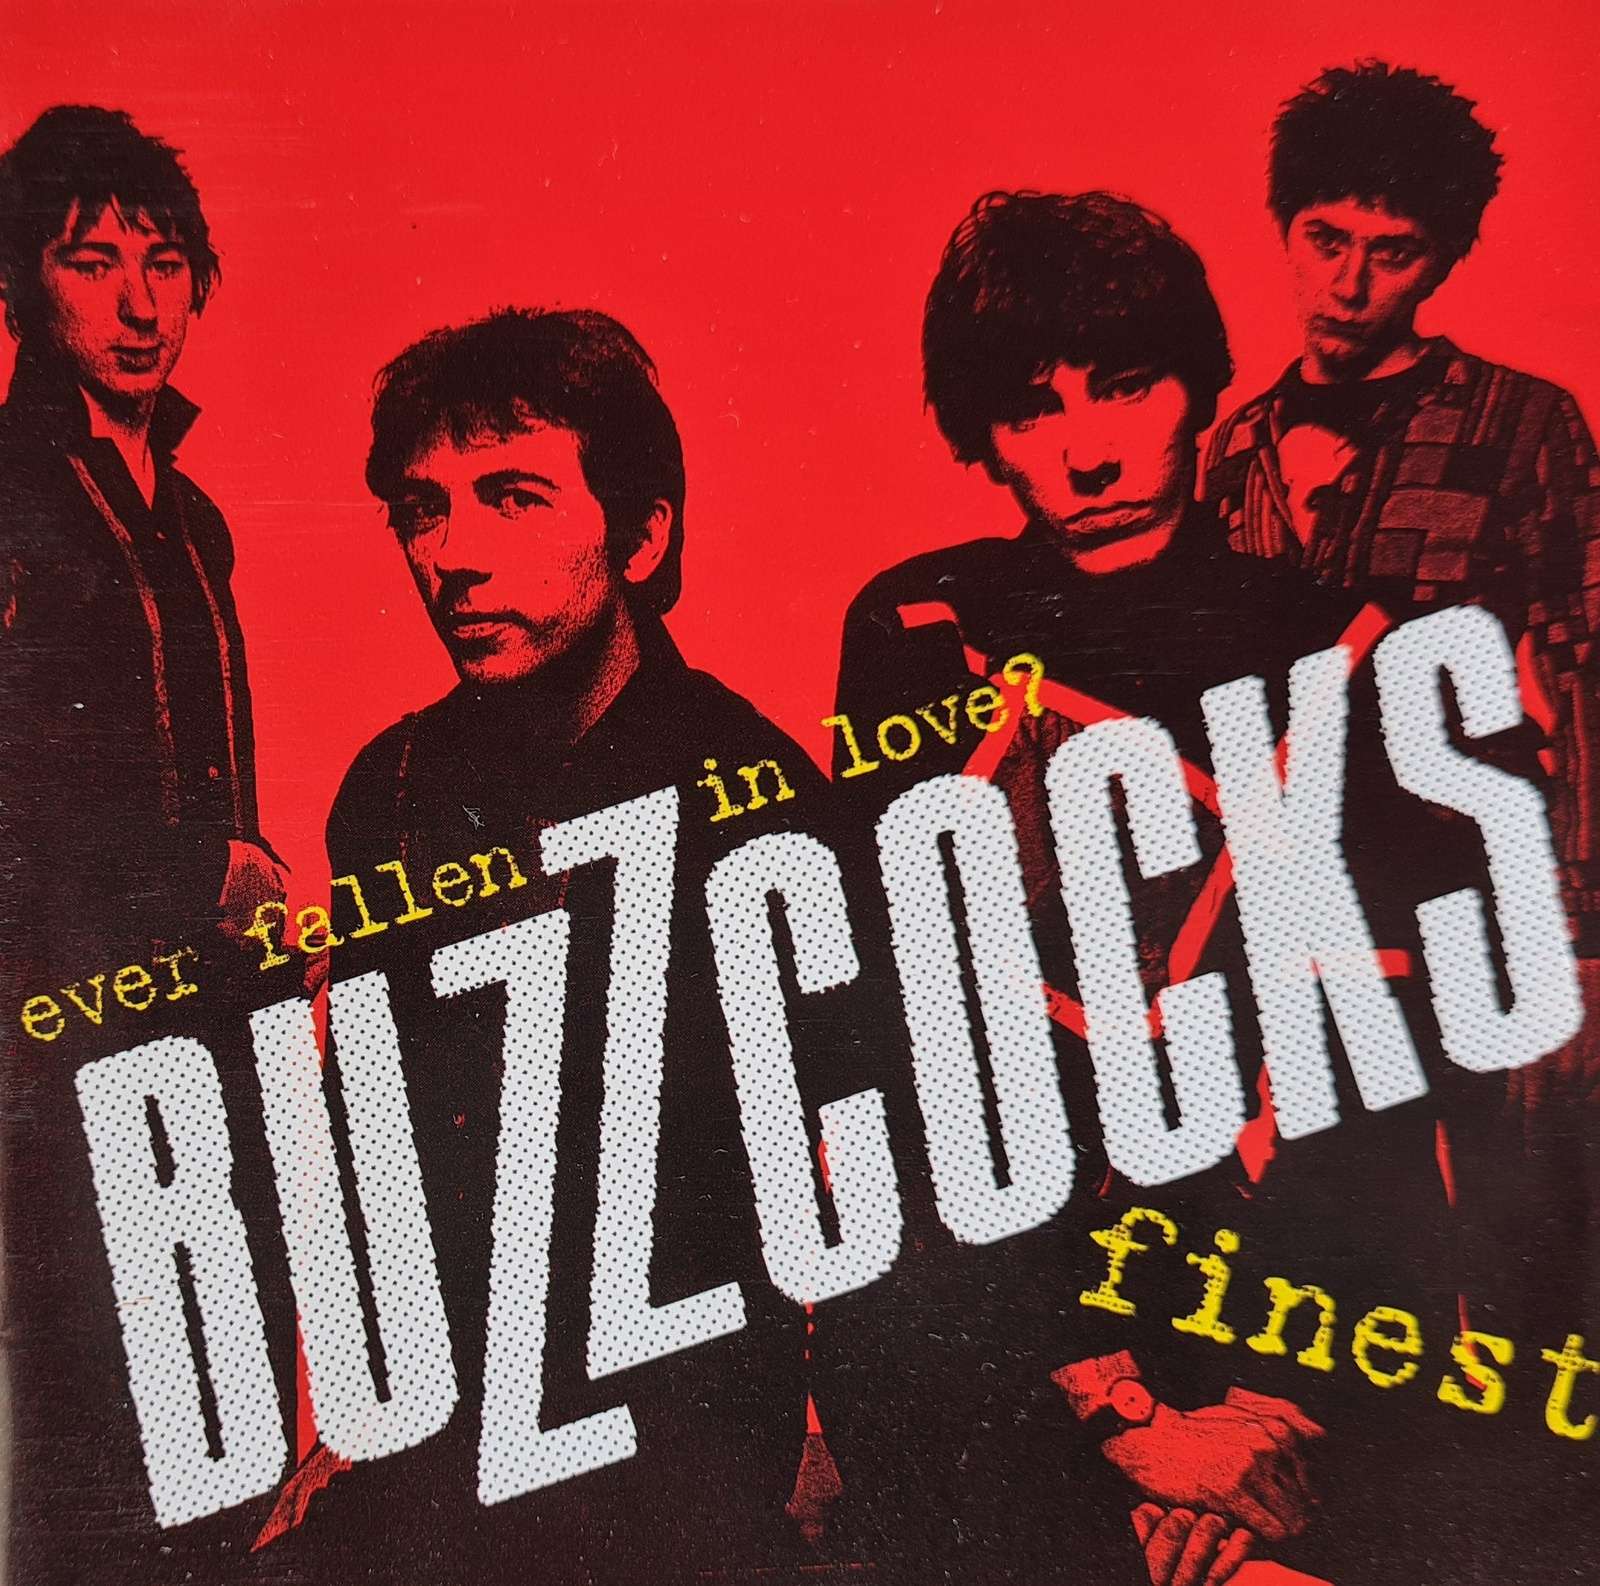 Buzzcocks - Ever Fallen in Love? Buzzcocks Finest (CD)